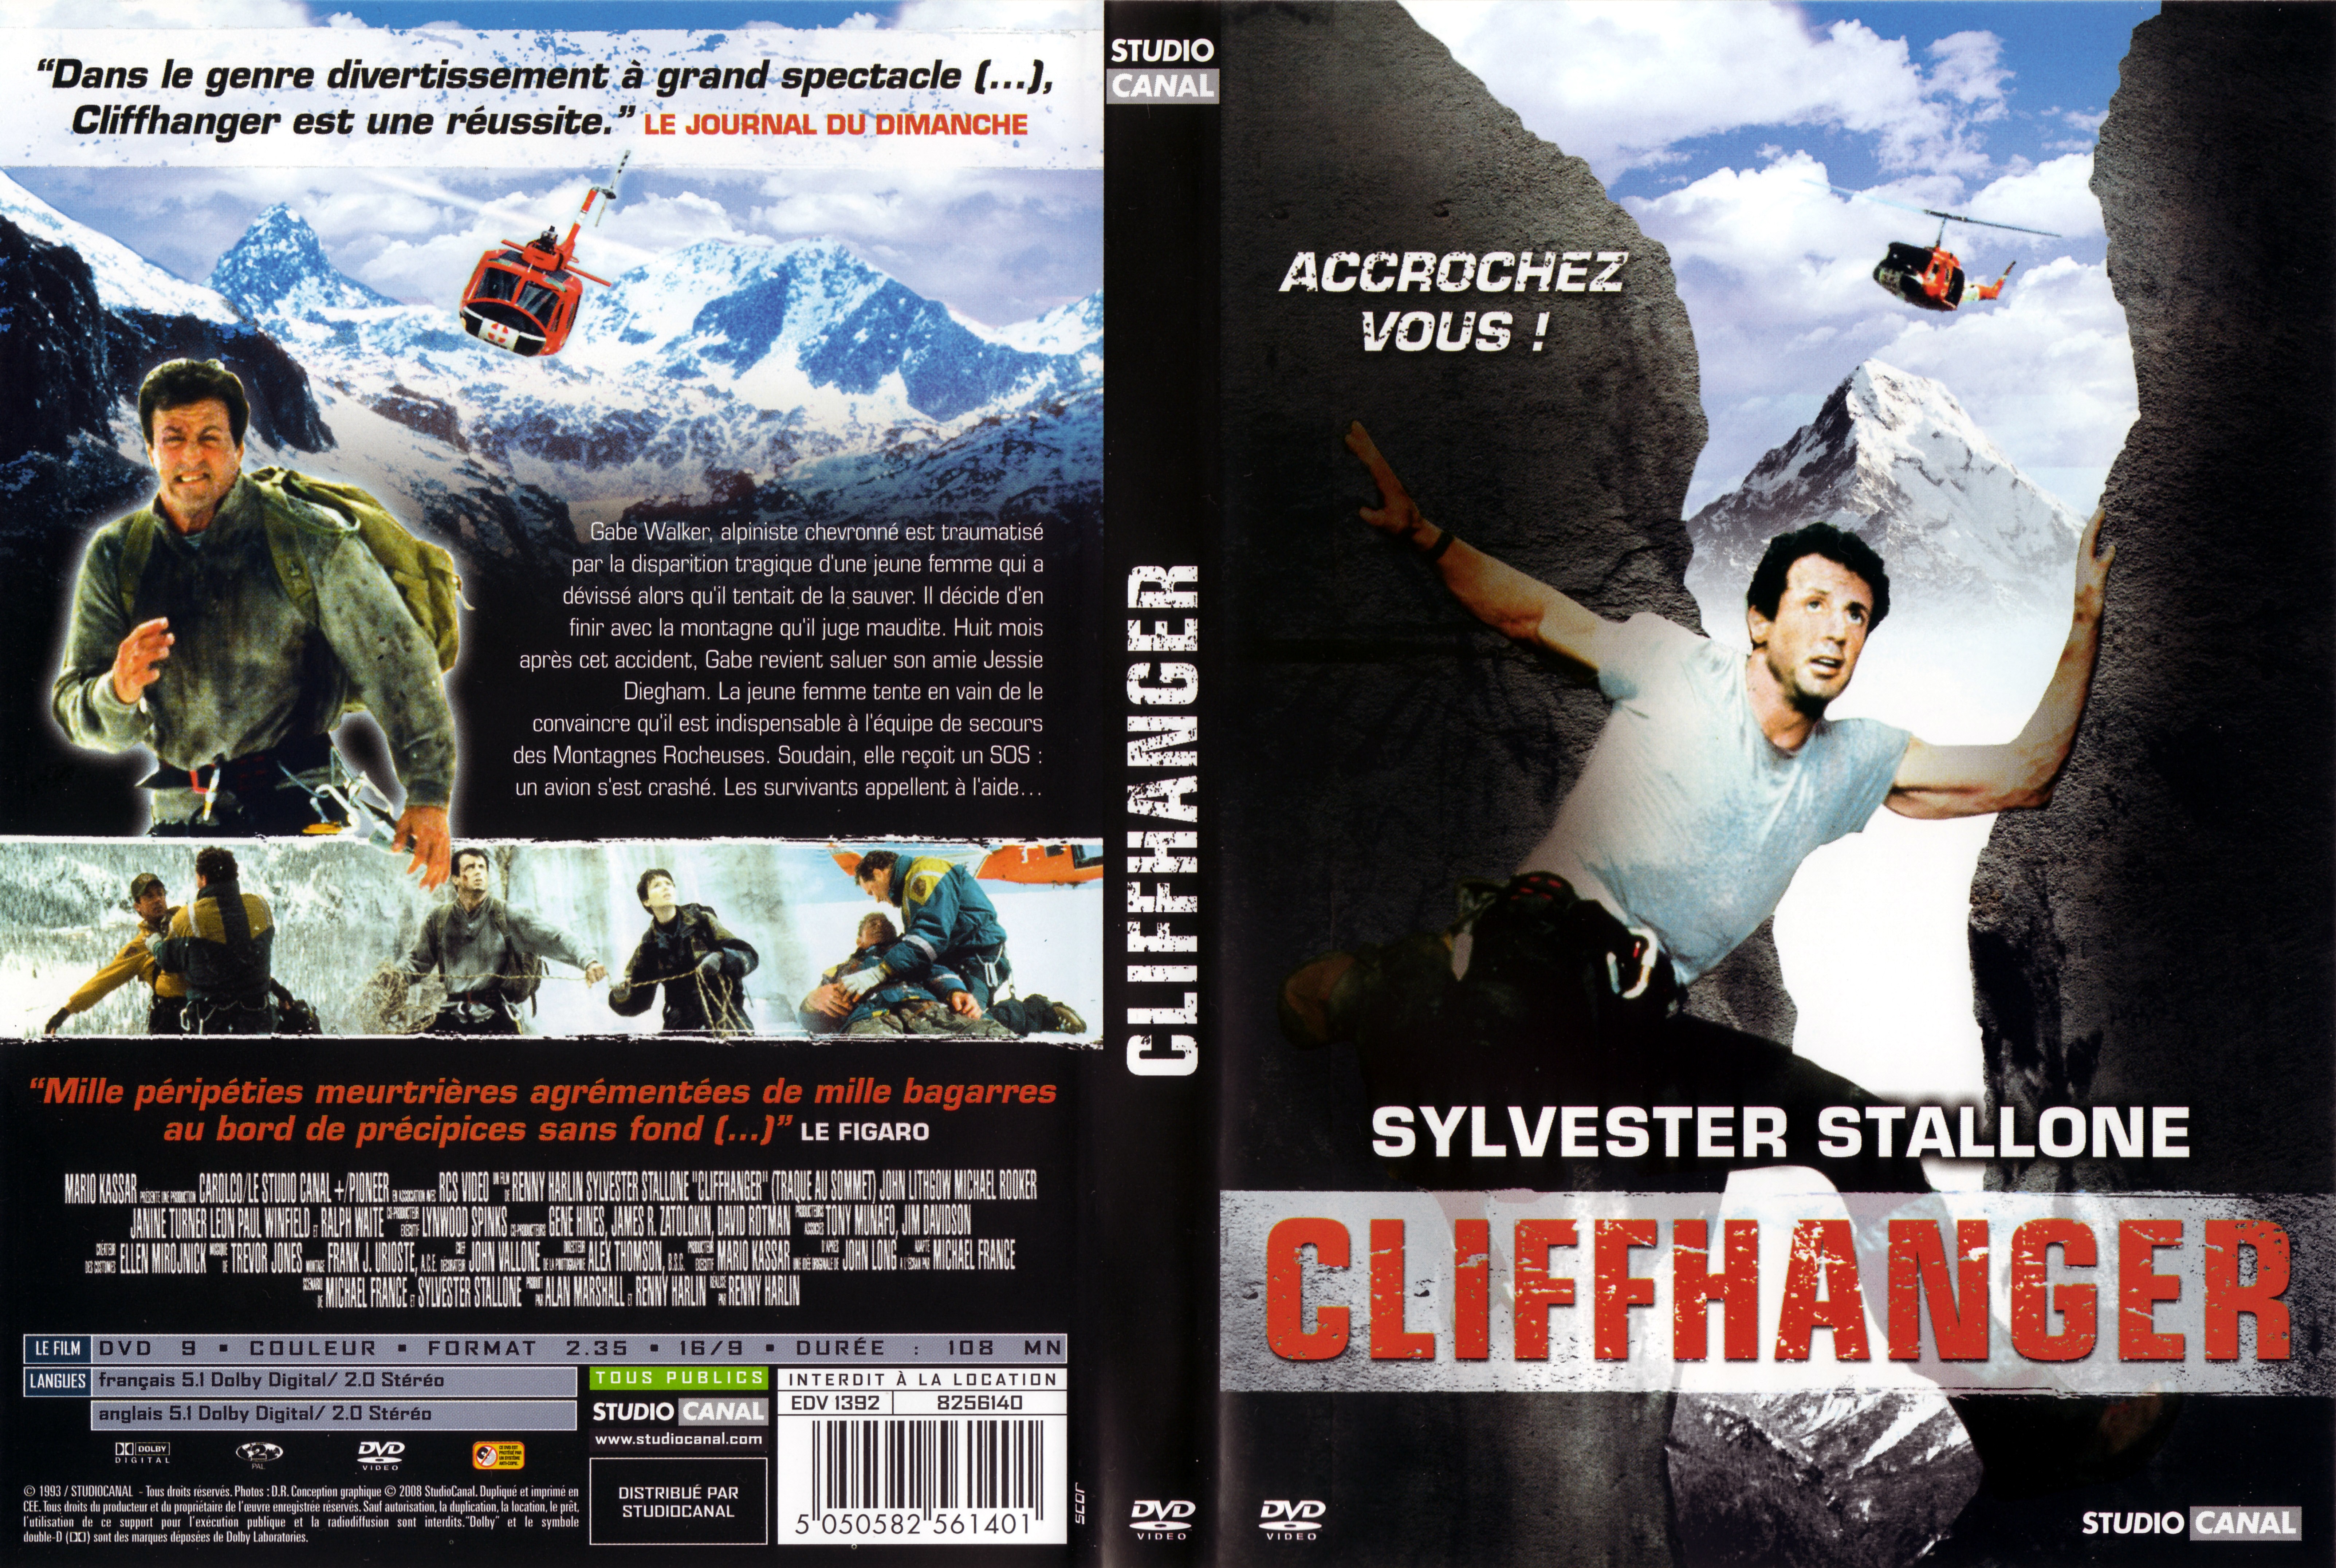 Jaquette DVD Cliffhanger v3